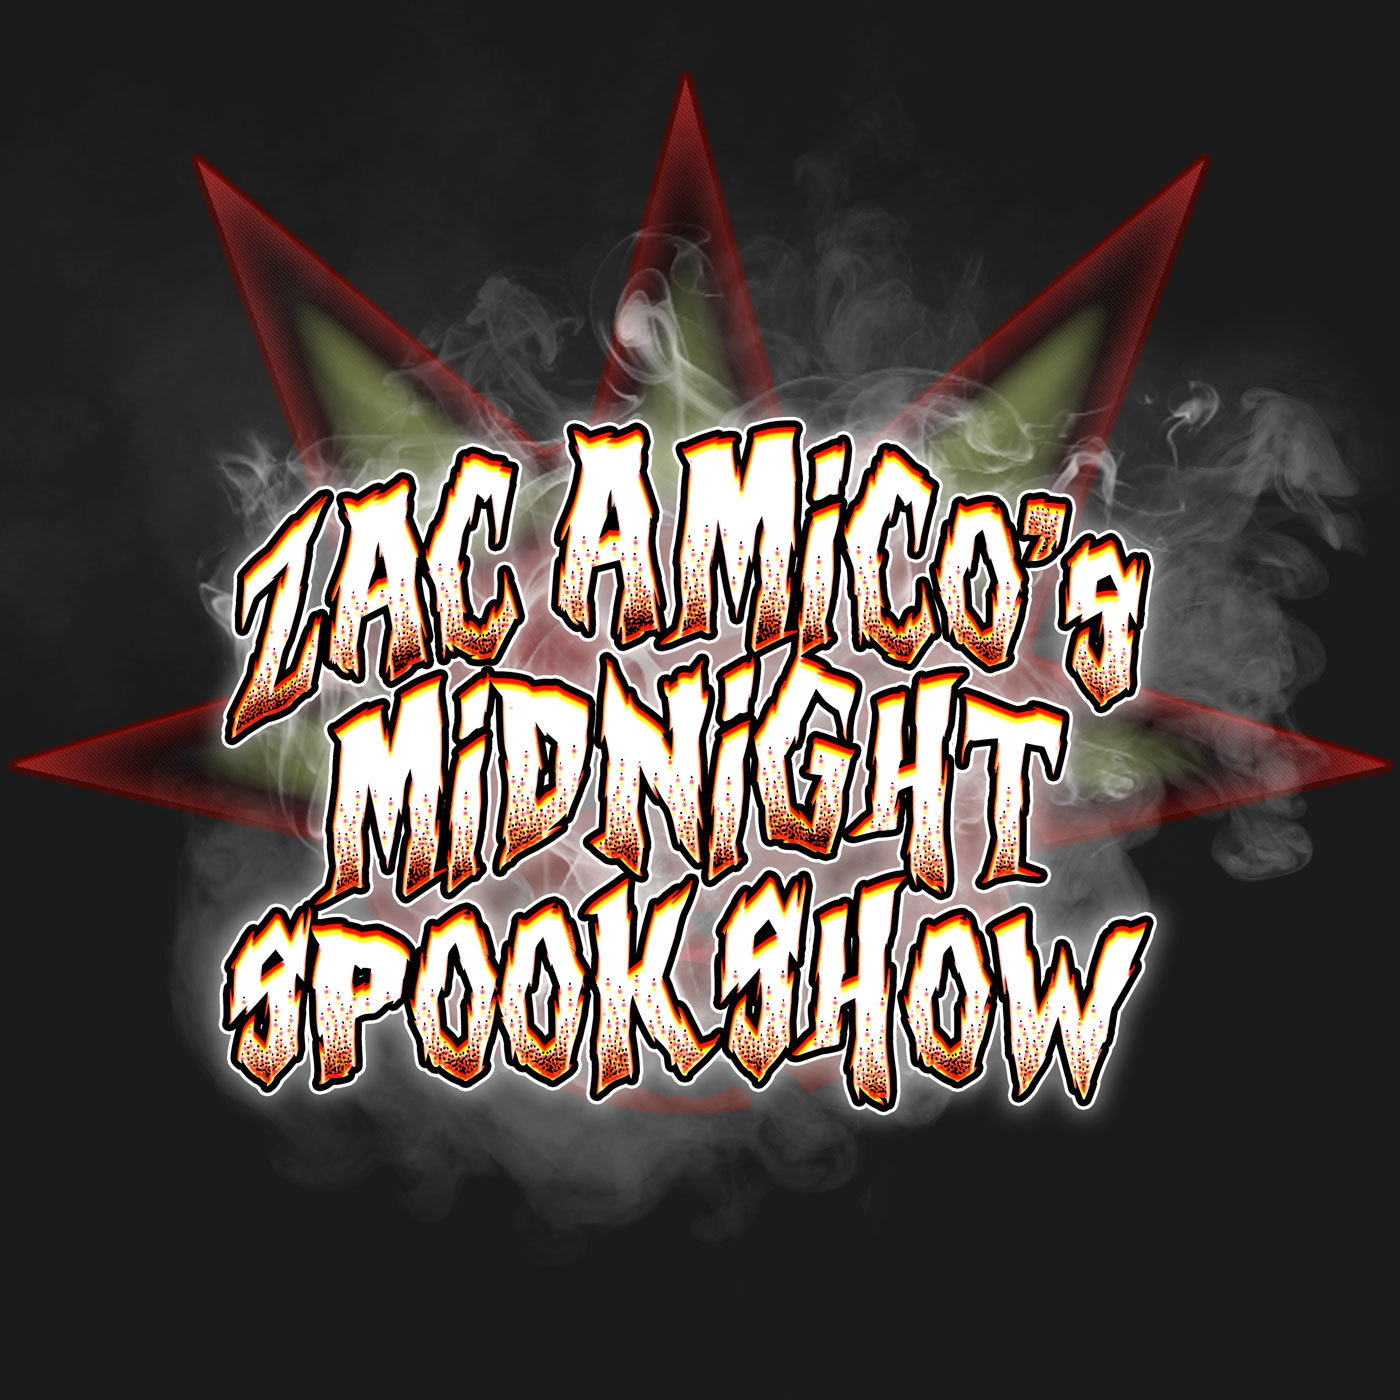 Zac Amico's Midnight Spook Show